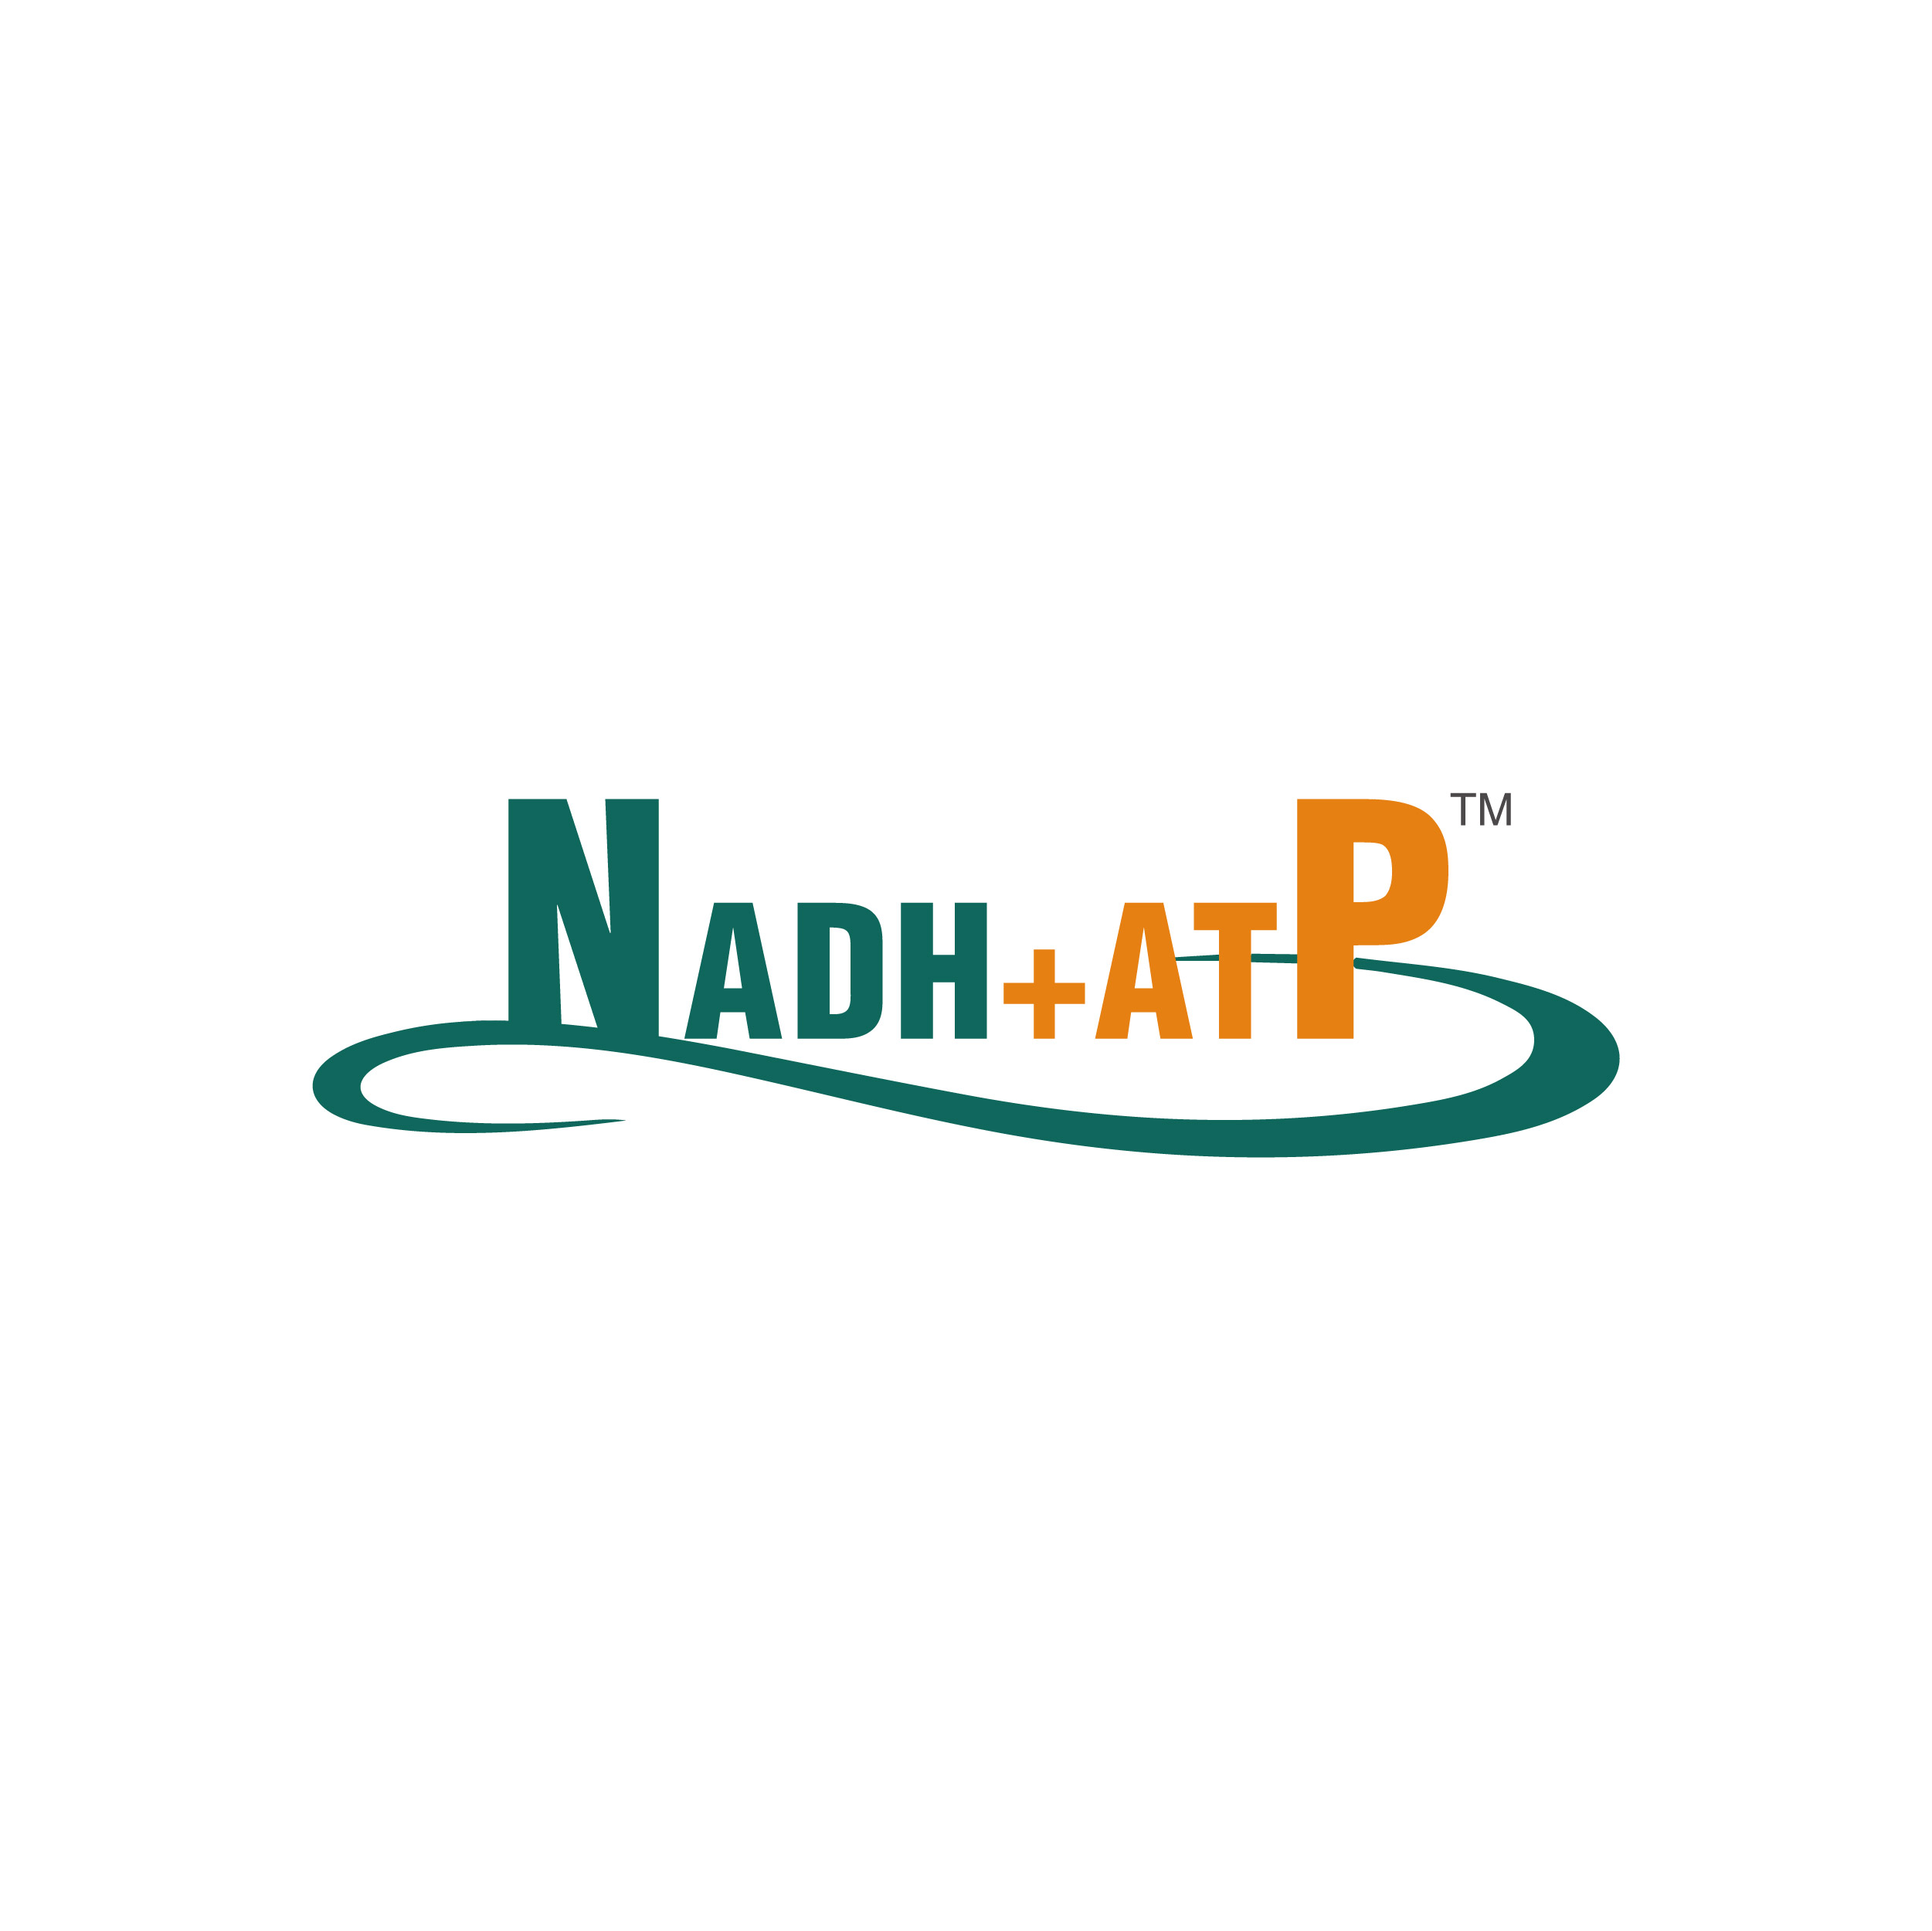 NADH+ATP